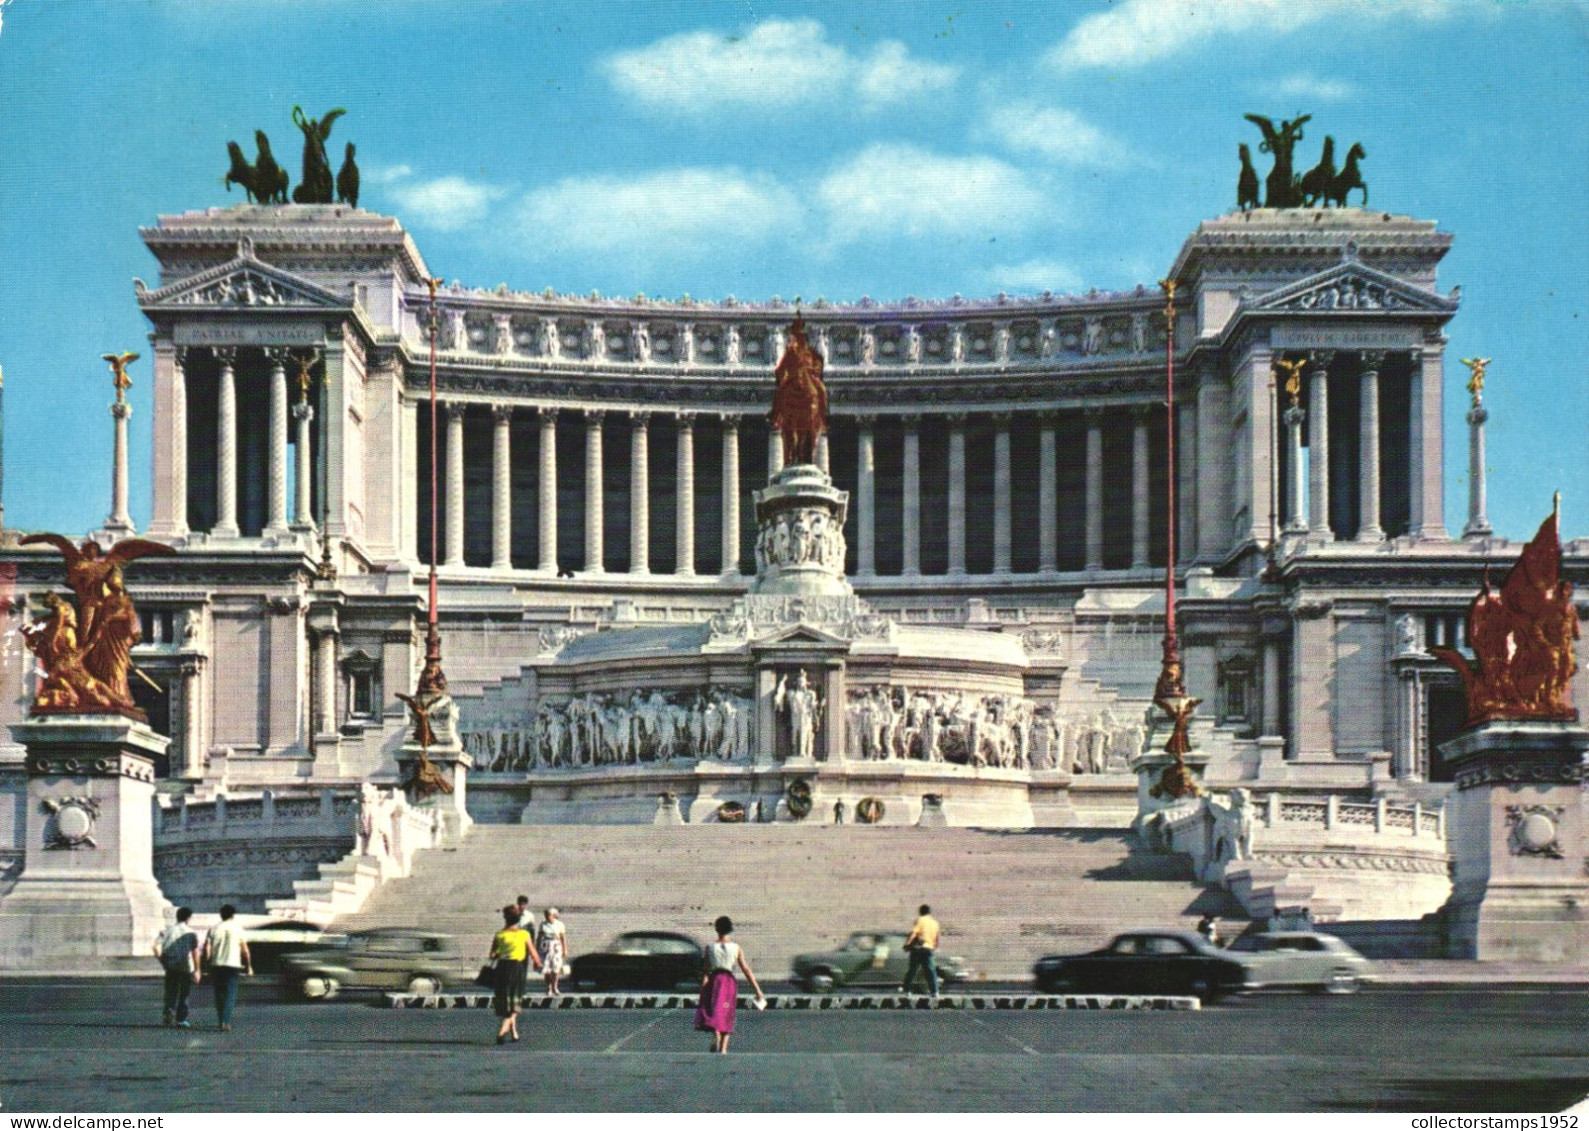 ROME, ALTAR OF FATHERLAND, BUILDING, STATUES, MONUMENT, ITALY - Altare Della Patria